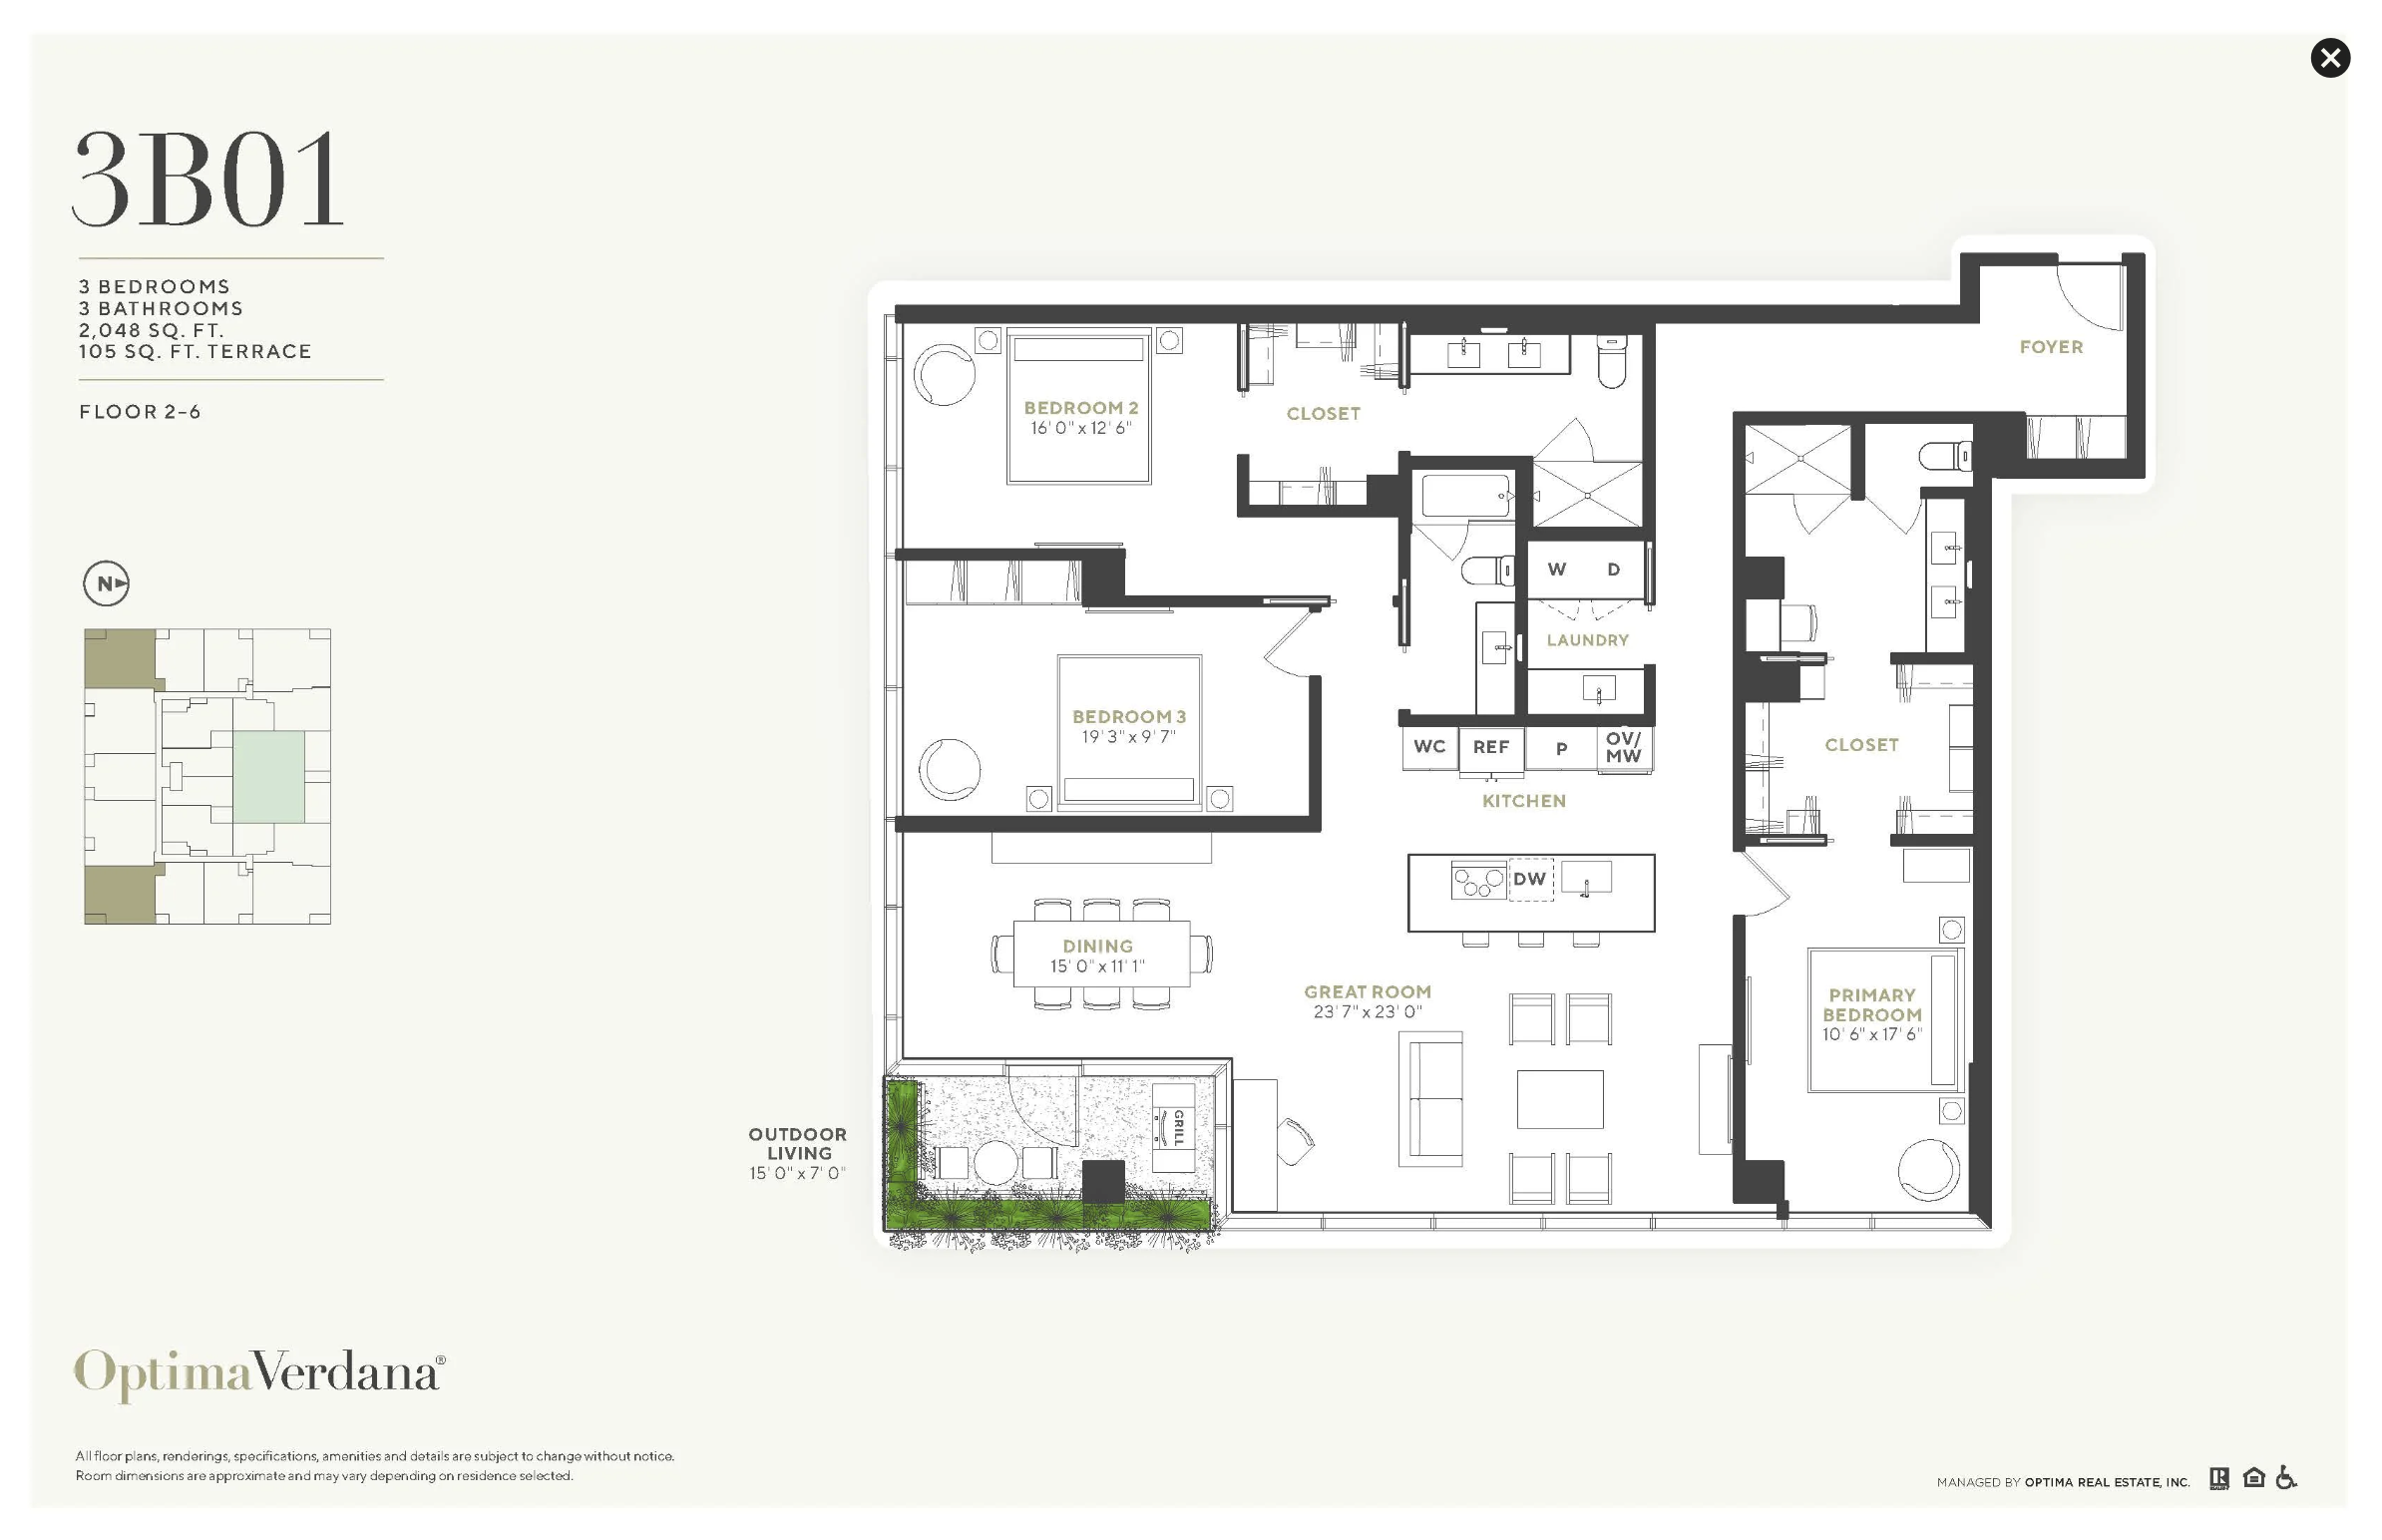 Sample three-bedroom floor plan via Optima